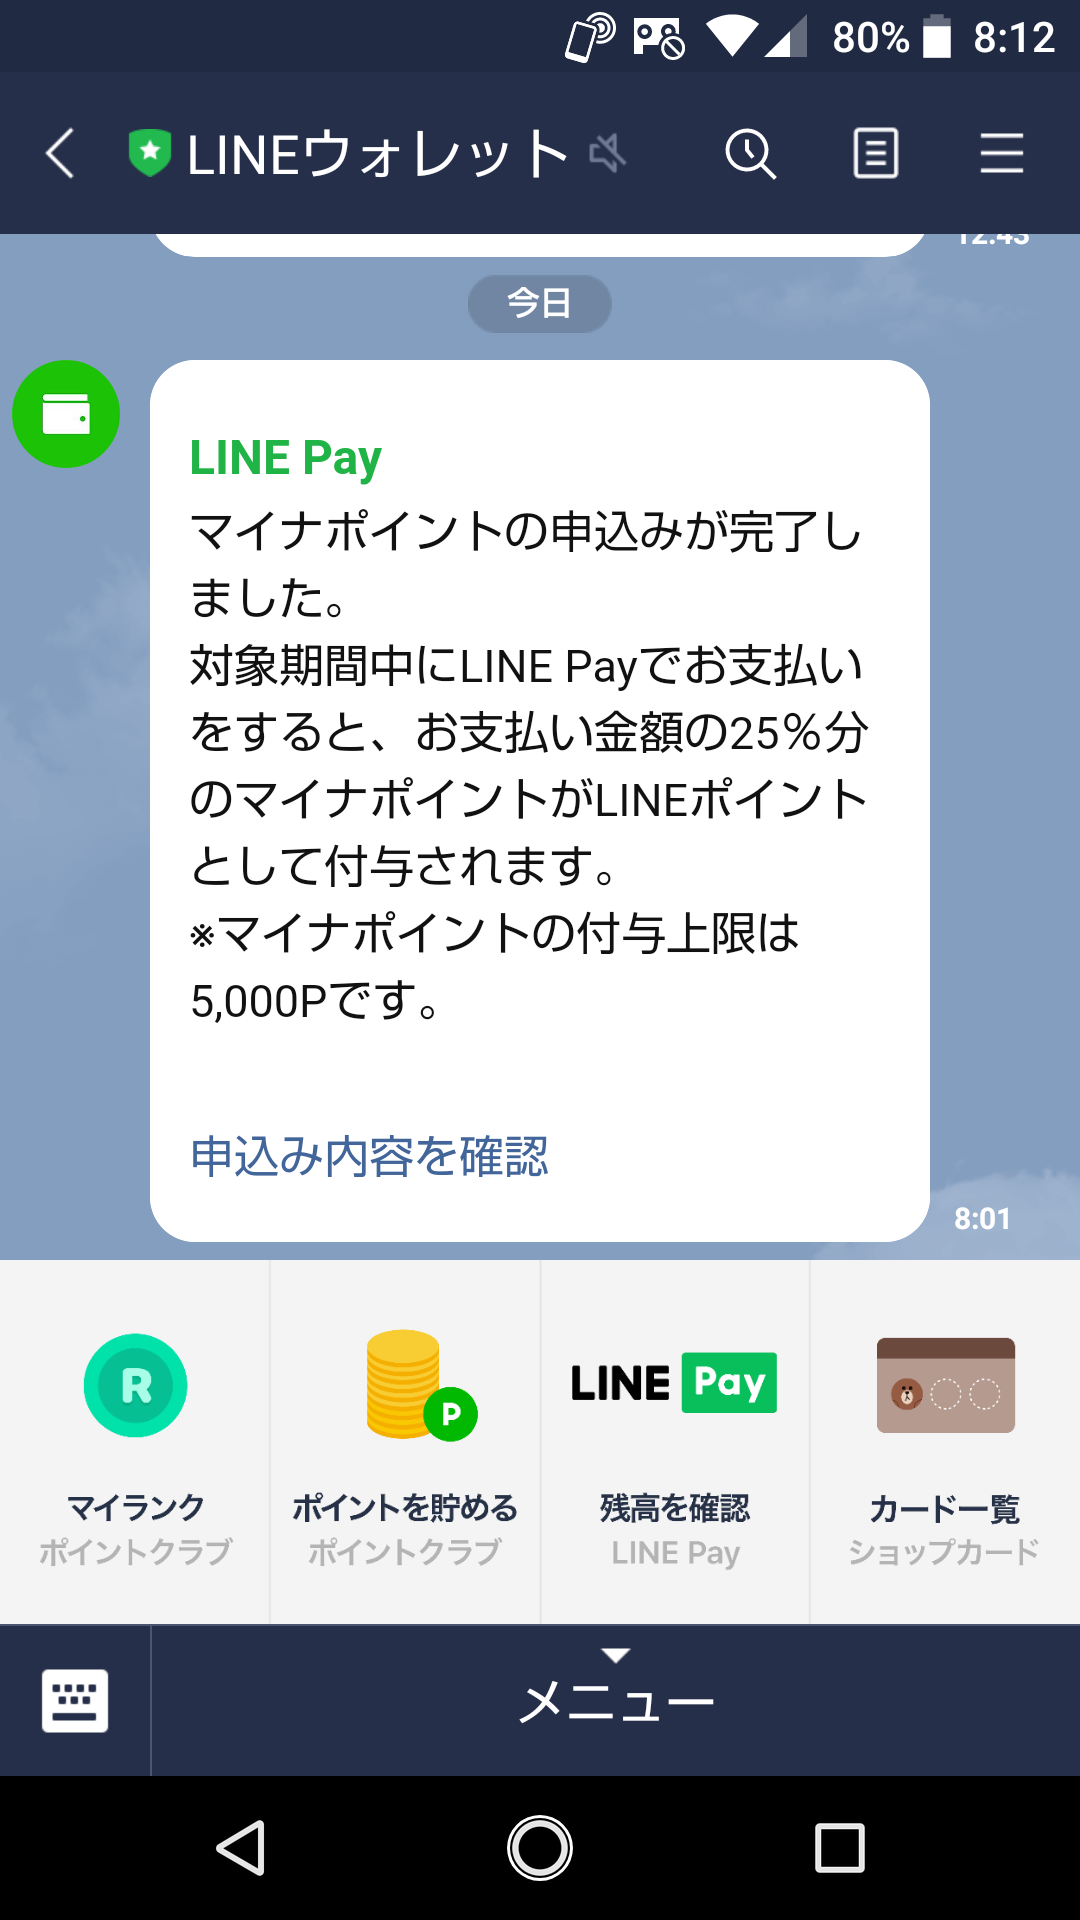 Pay ポイント line マイナ